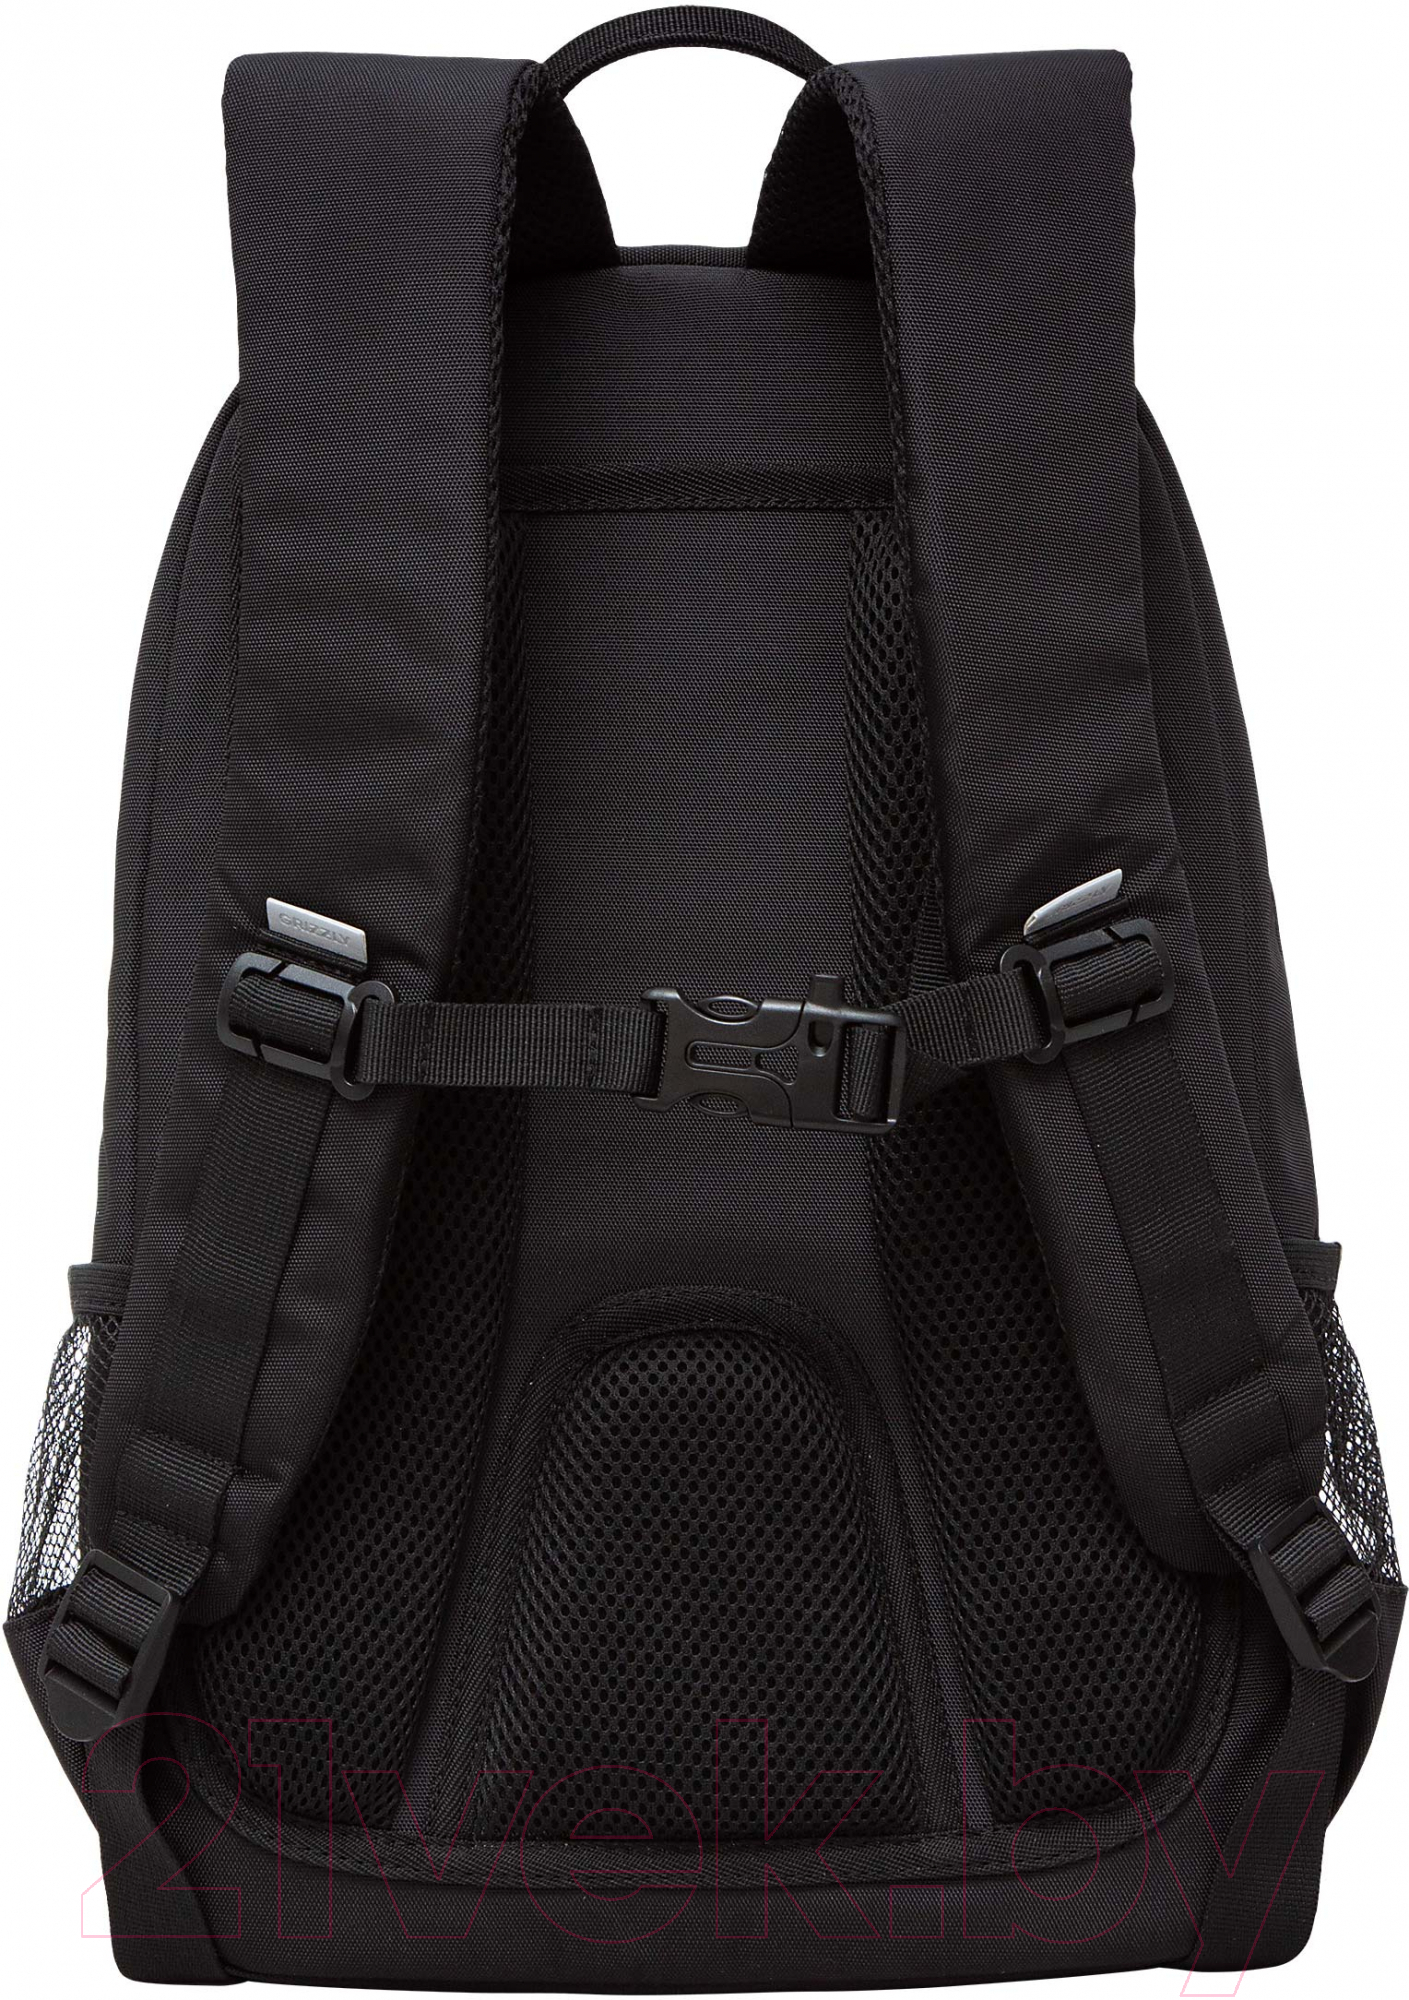 Школьный рюкзак Grizzly RG-464-1